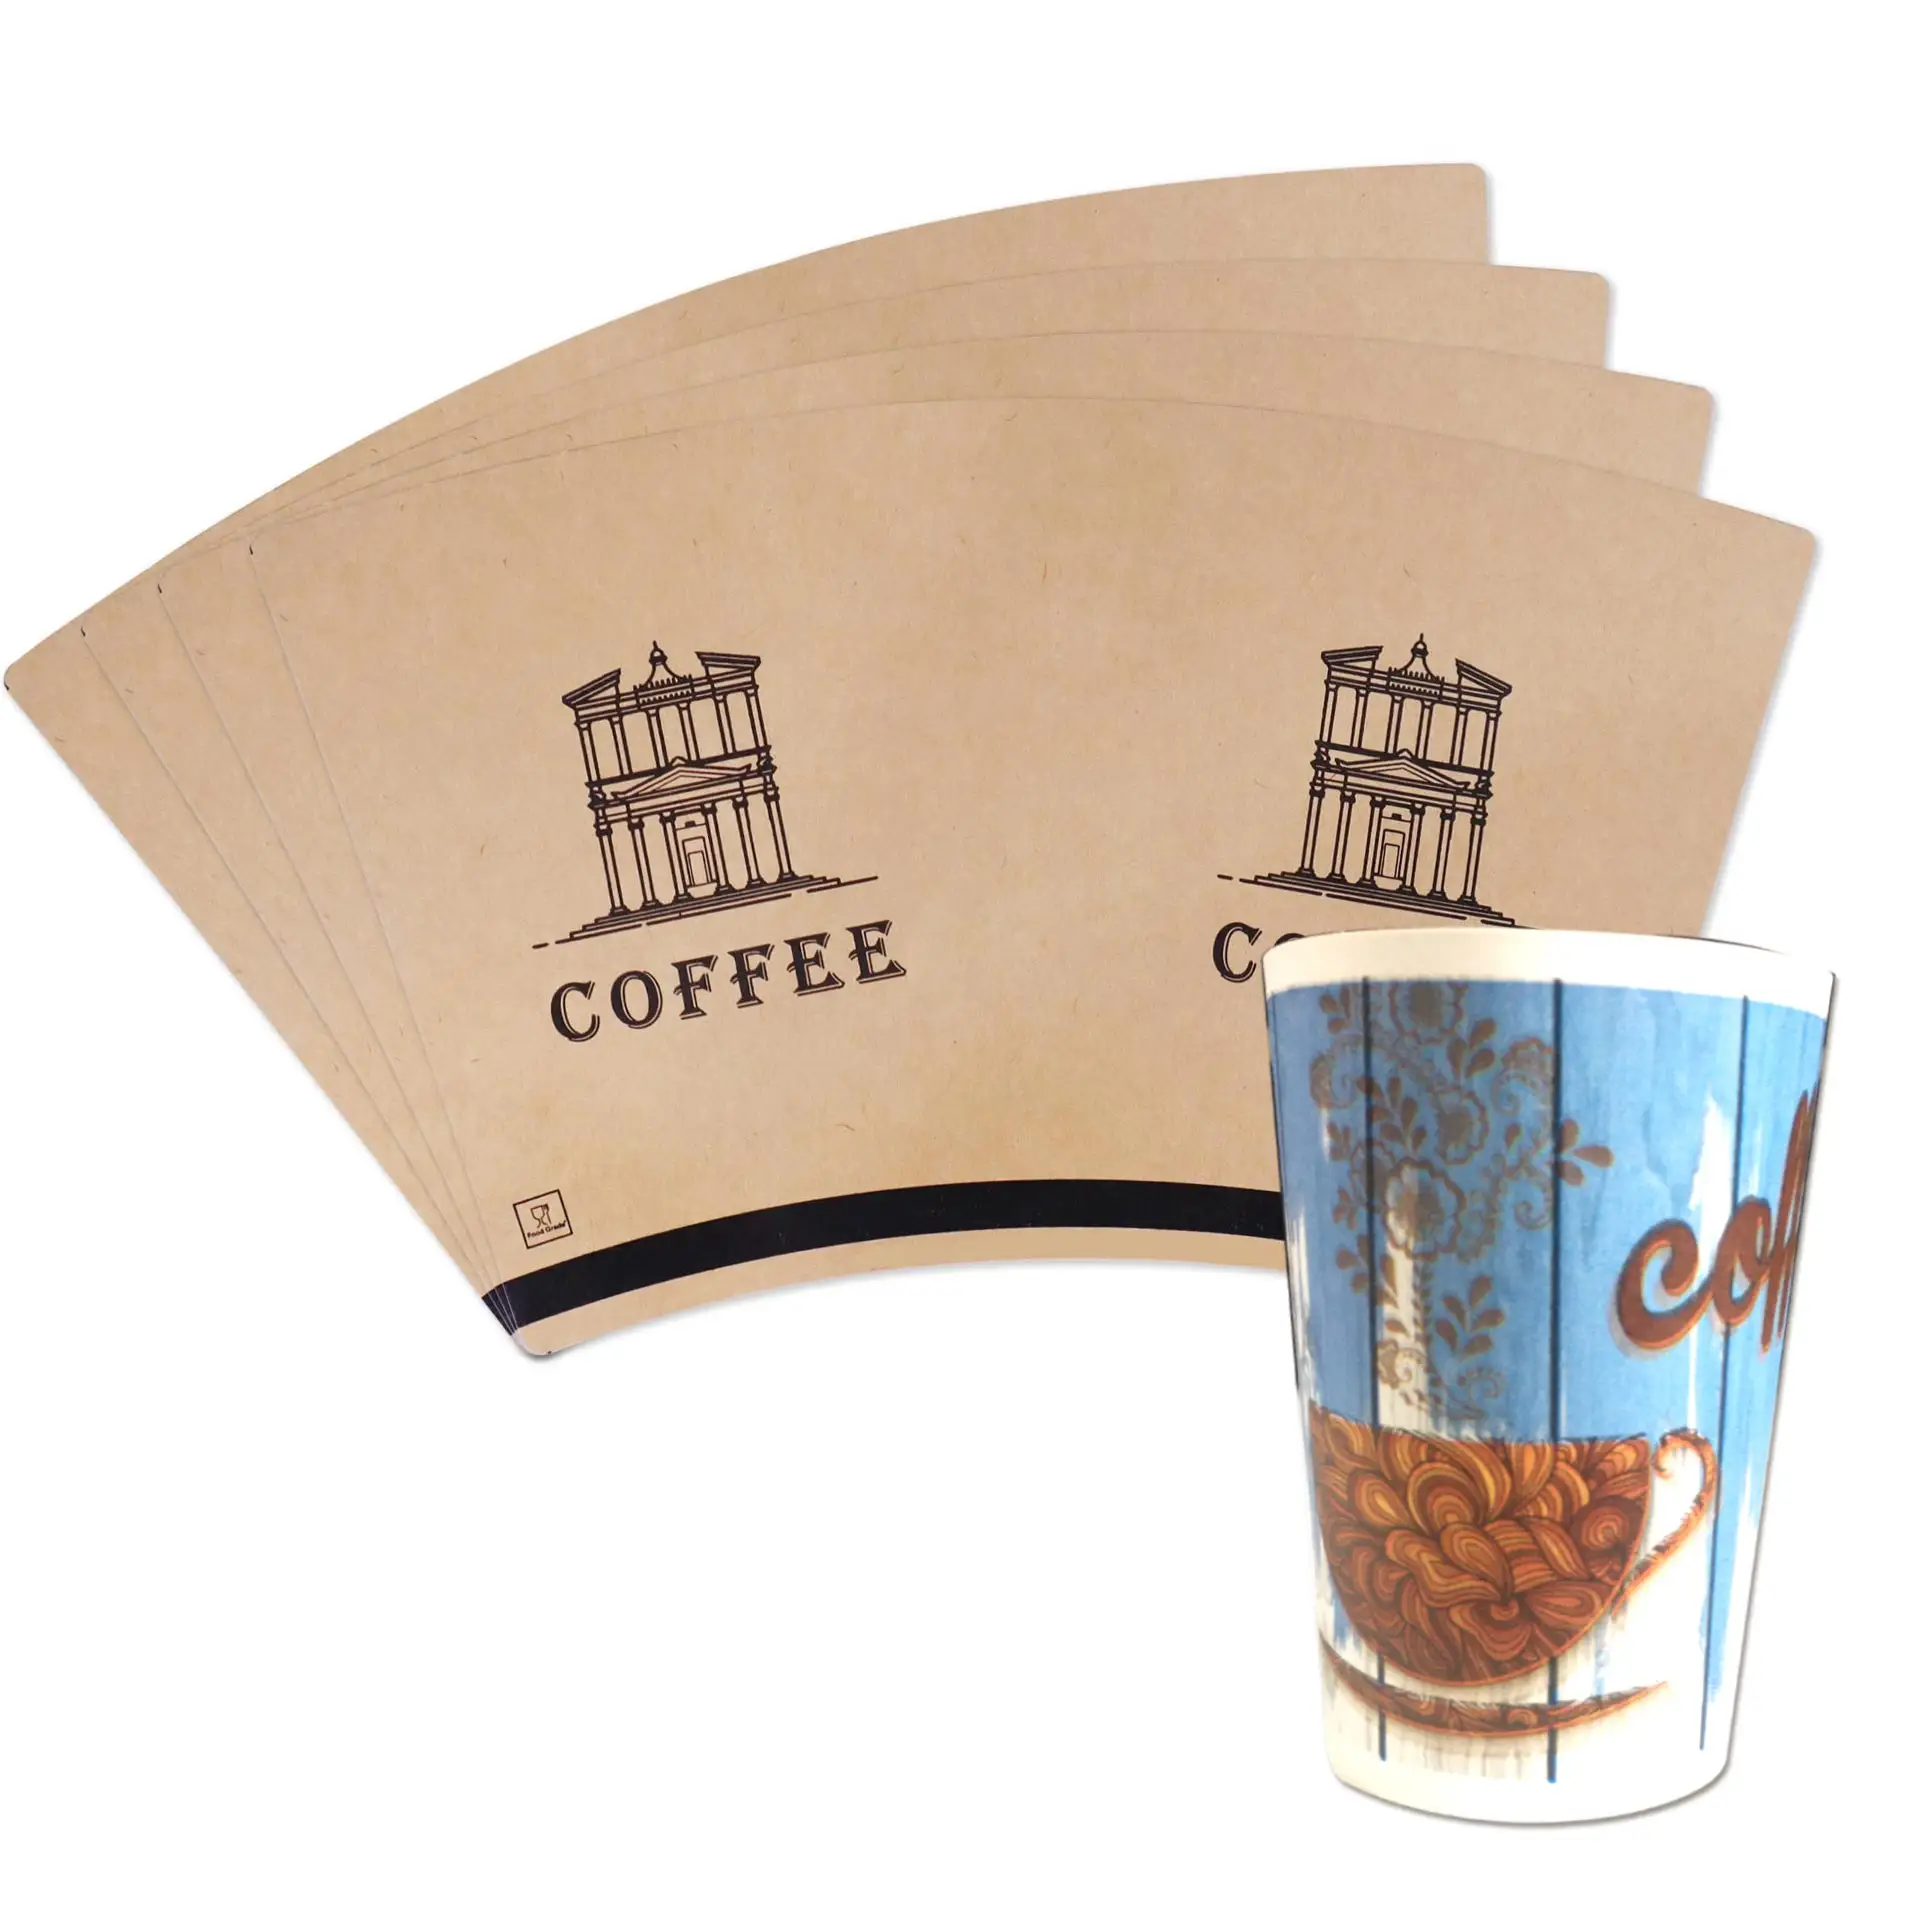 Peコーティングされた原料コーヒー紙コップファン印刷されていない食品グレード9オンス12オンスサウジアラビア紙コップファン